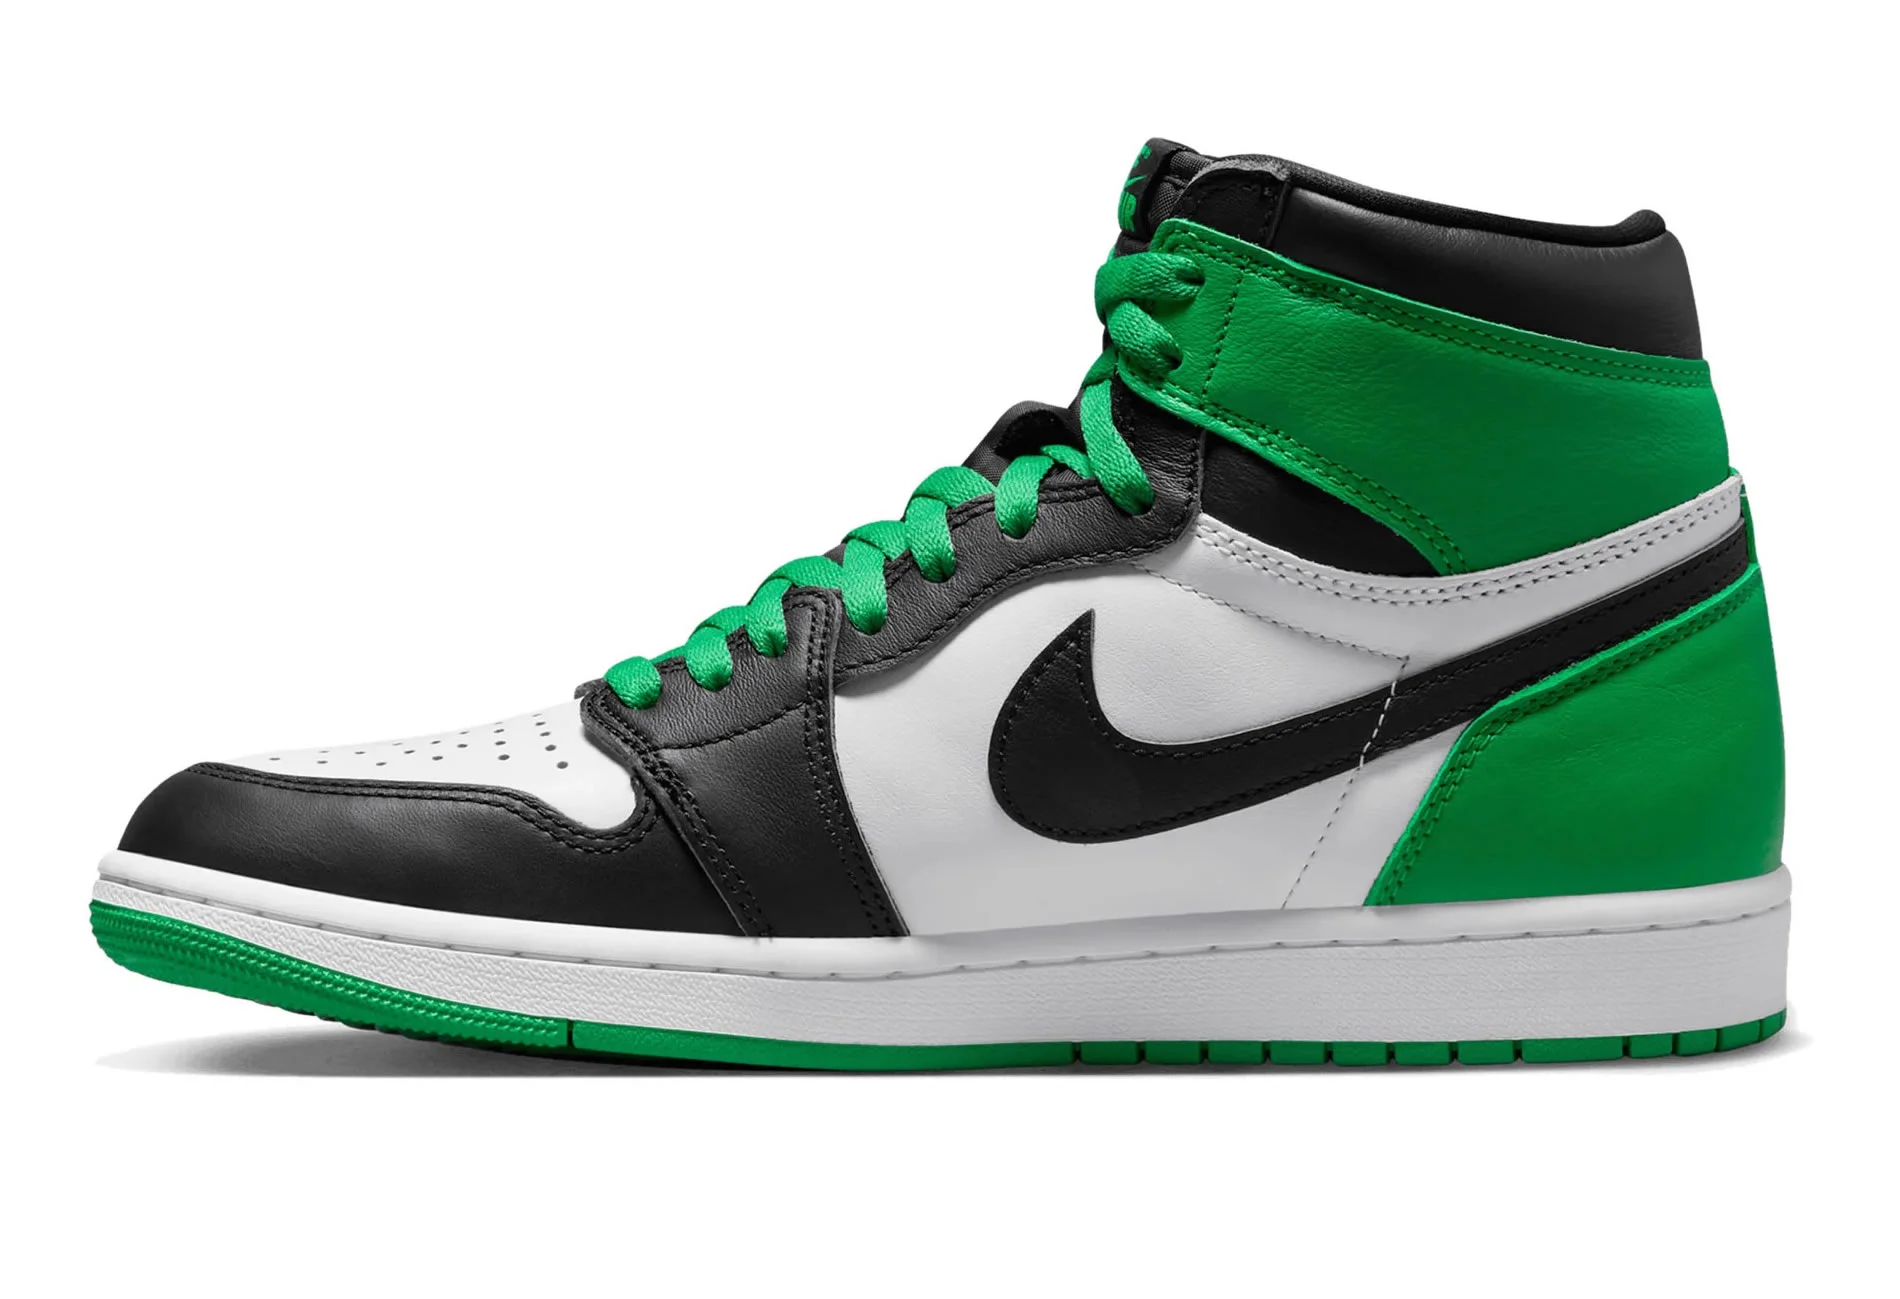 Air Jordan 1 Retro High Og Lucky Green Dz5485 031 Ljr Batch Sneakers (1) - www.ljrofficial.com